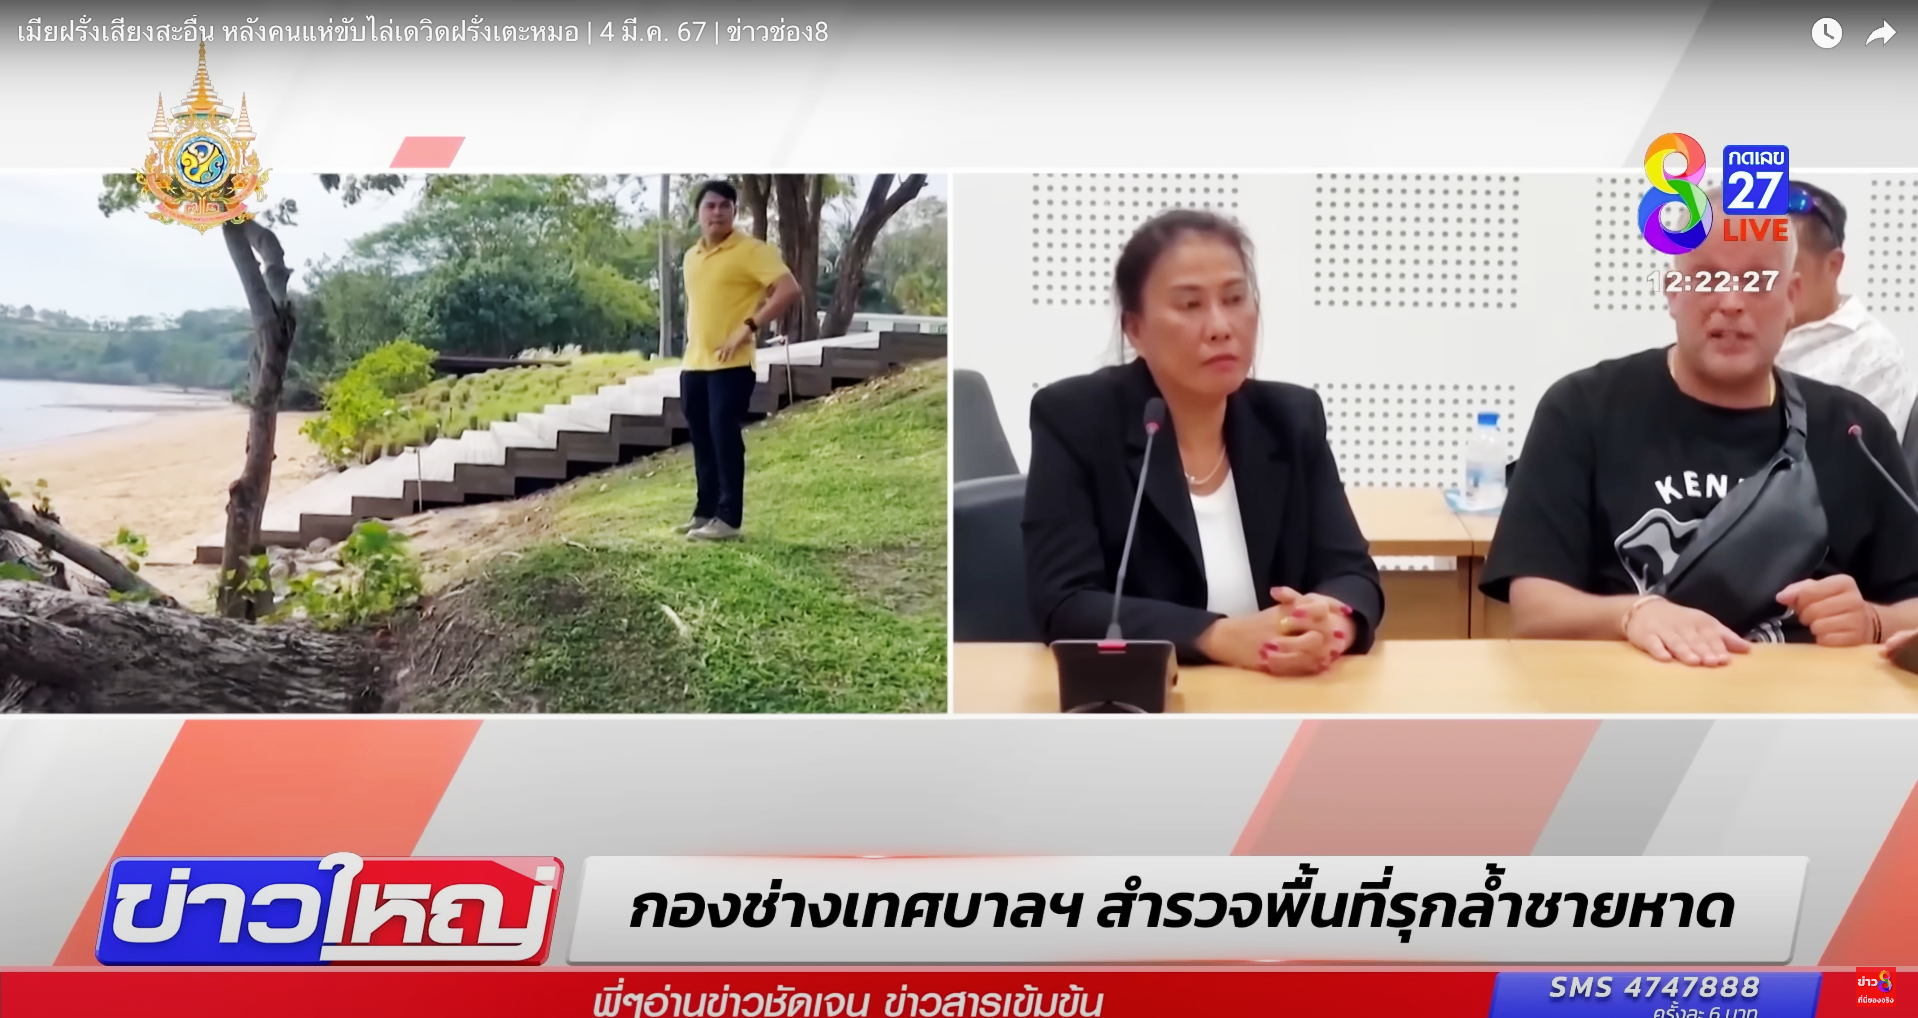 fotogramma di un servizio del telegiornale thailandese sulla vicenda dello svizzero a phuket